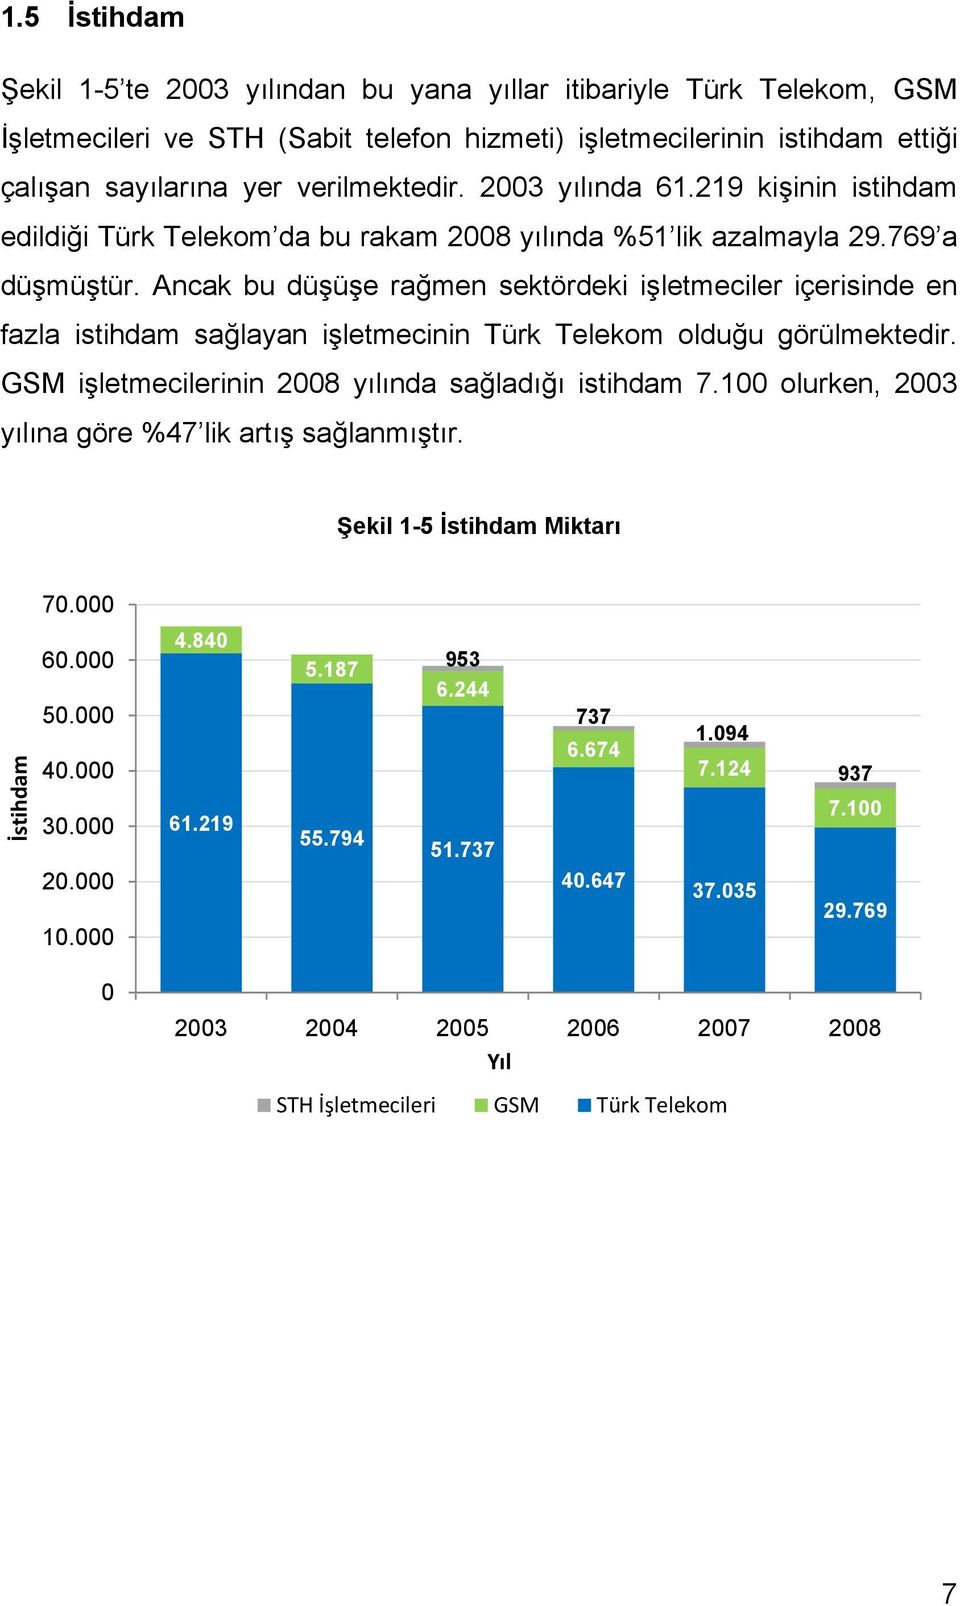 Ancak bu düşüşe rağmen sektördeki işletmeciler içerisinde en fazla istihdam sağlayan işletmecinin Türk Telekom olduğu görülmektedir. GSM işletmecilerinin 2008 yılında sağladığı istihdam 7.